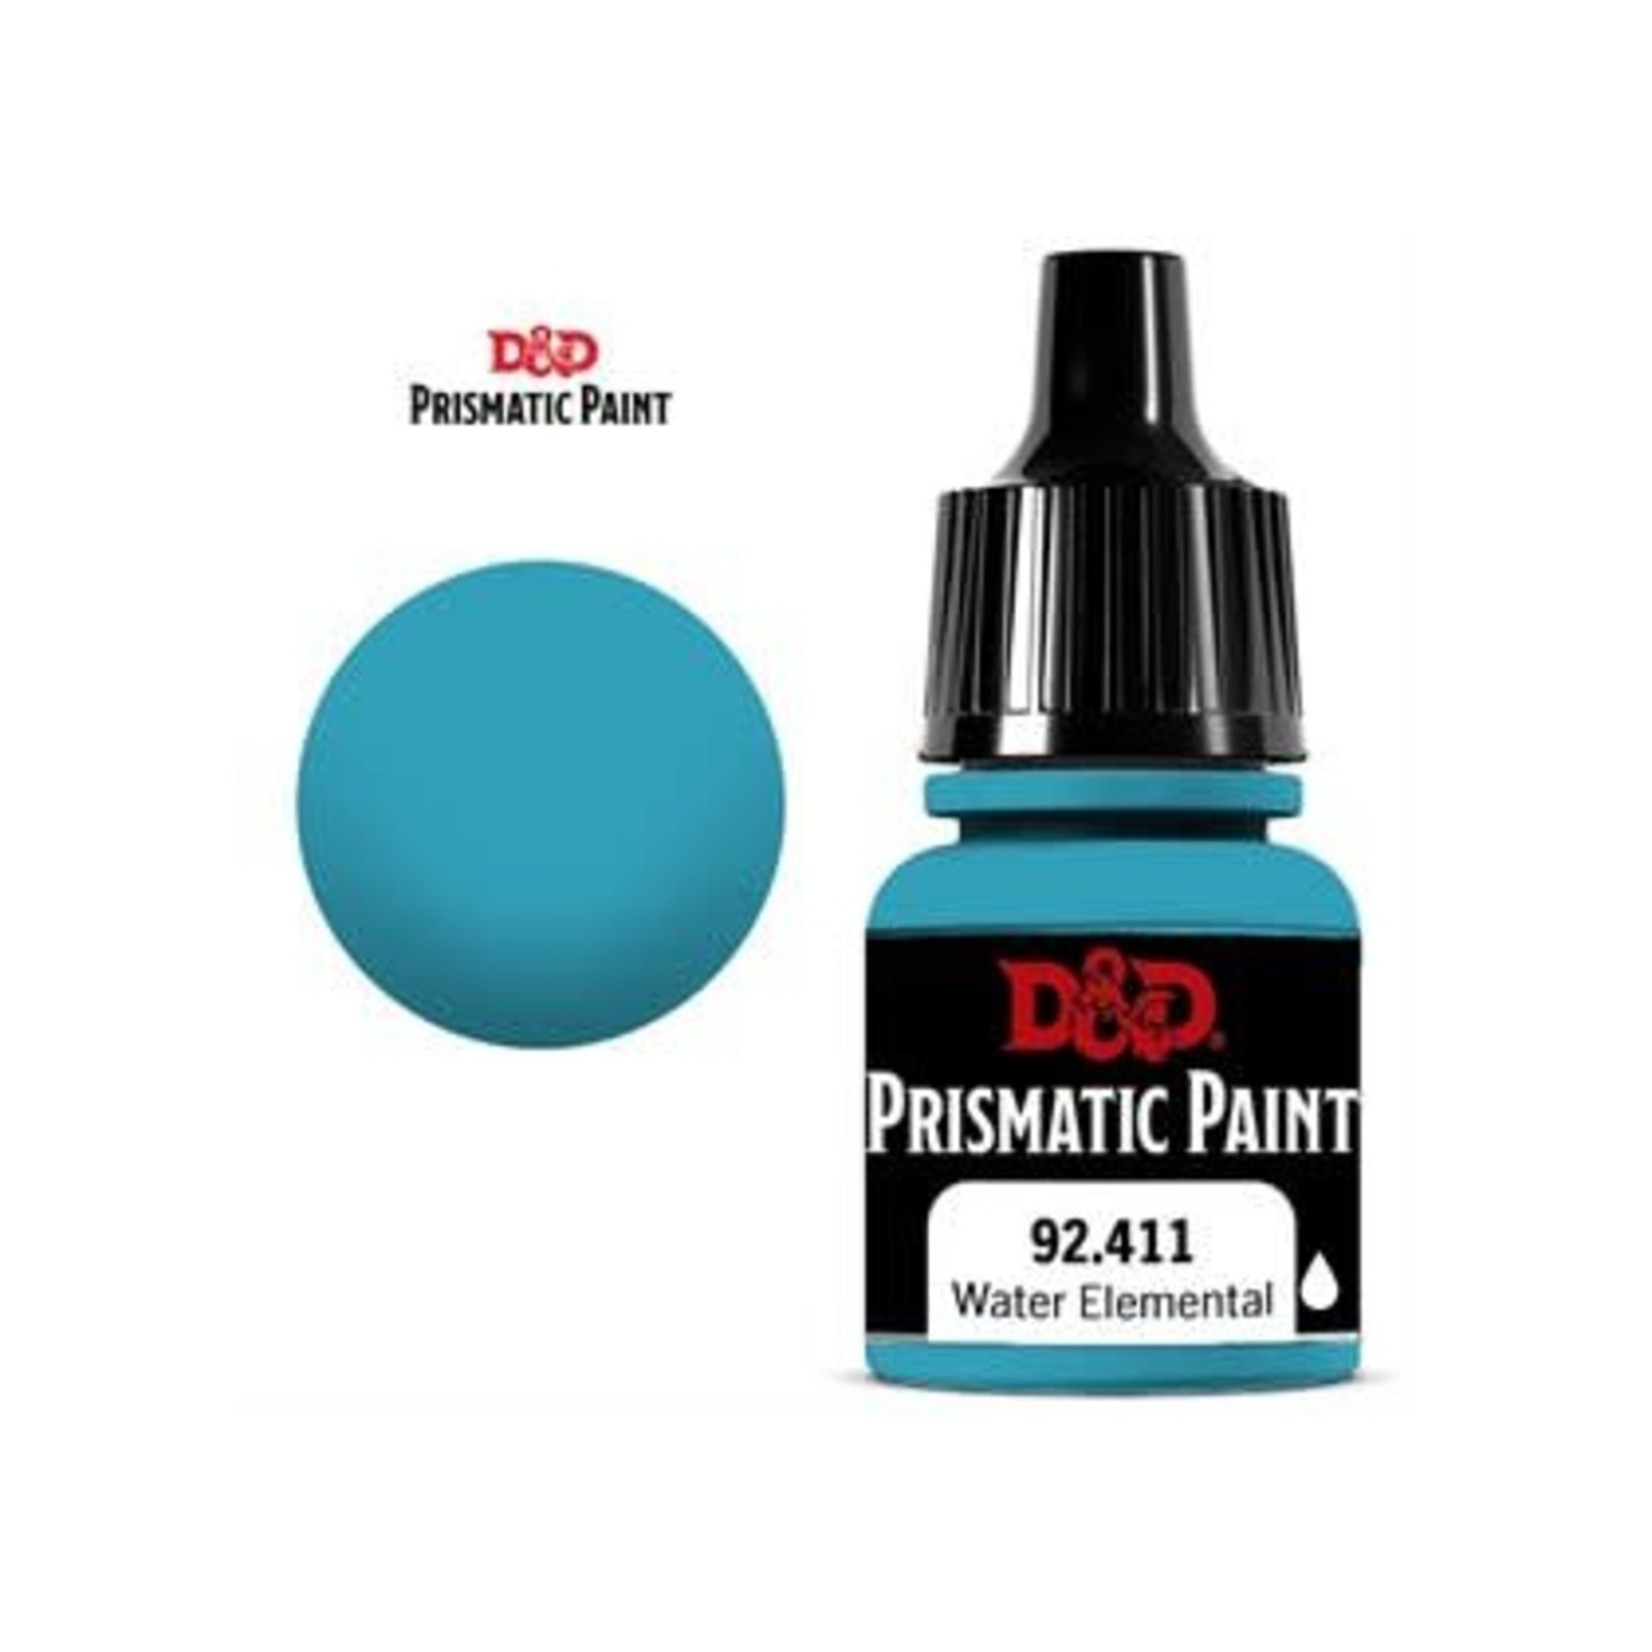 DnD Prismatic Paint Miniature Paint Water Elemental 92,411